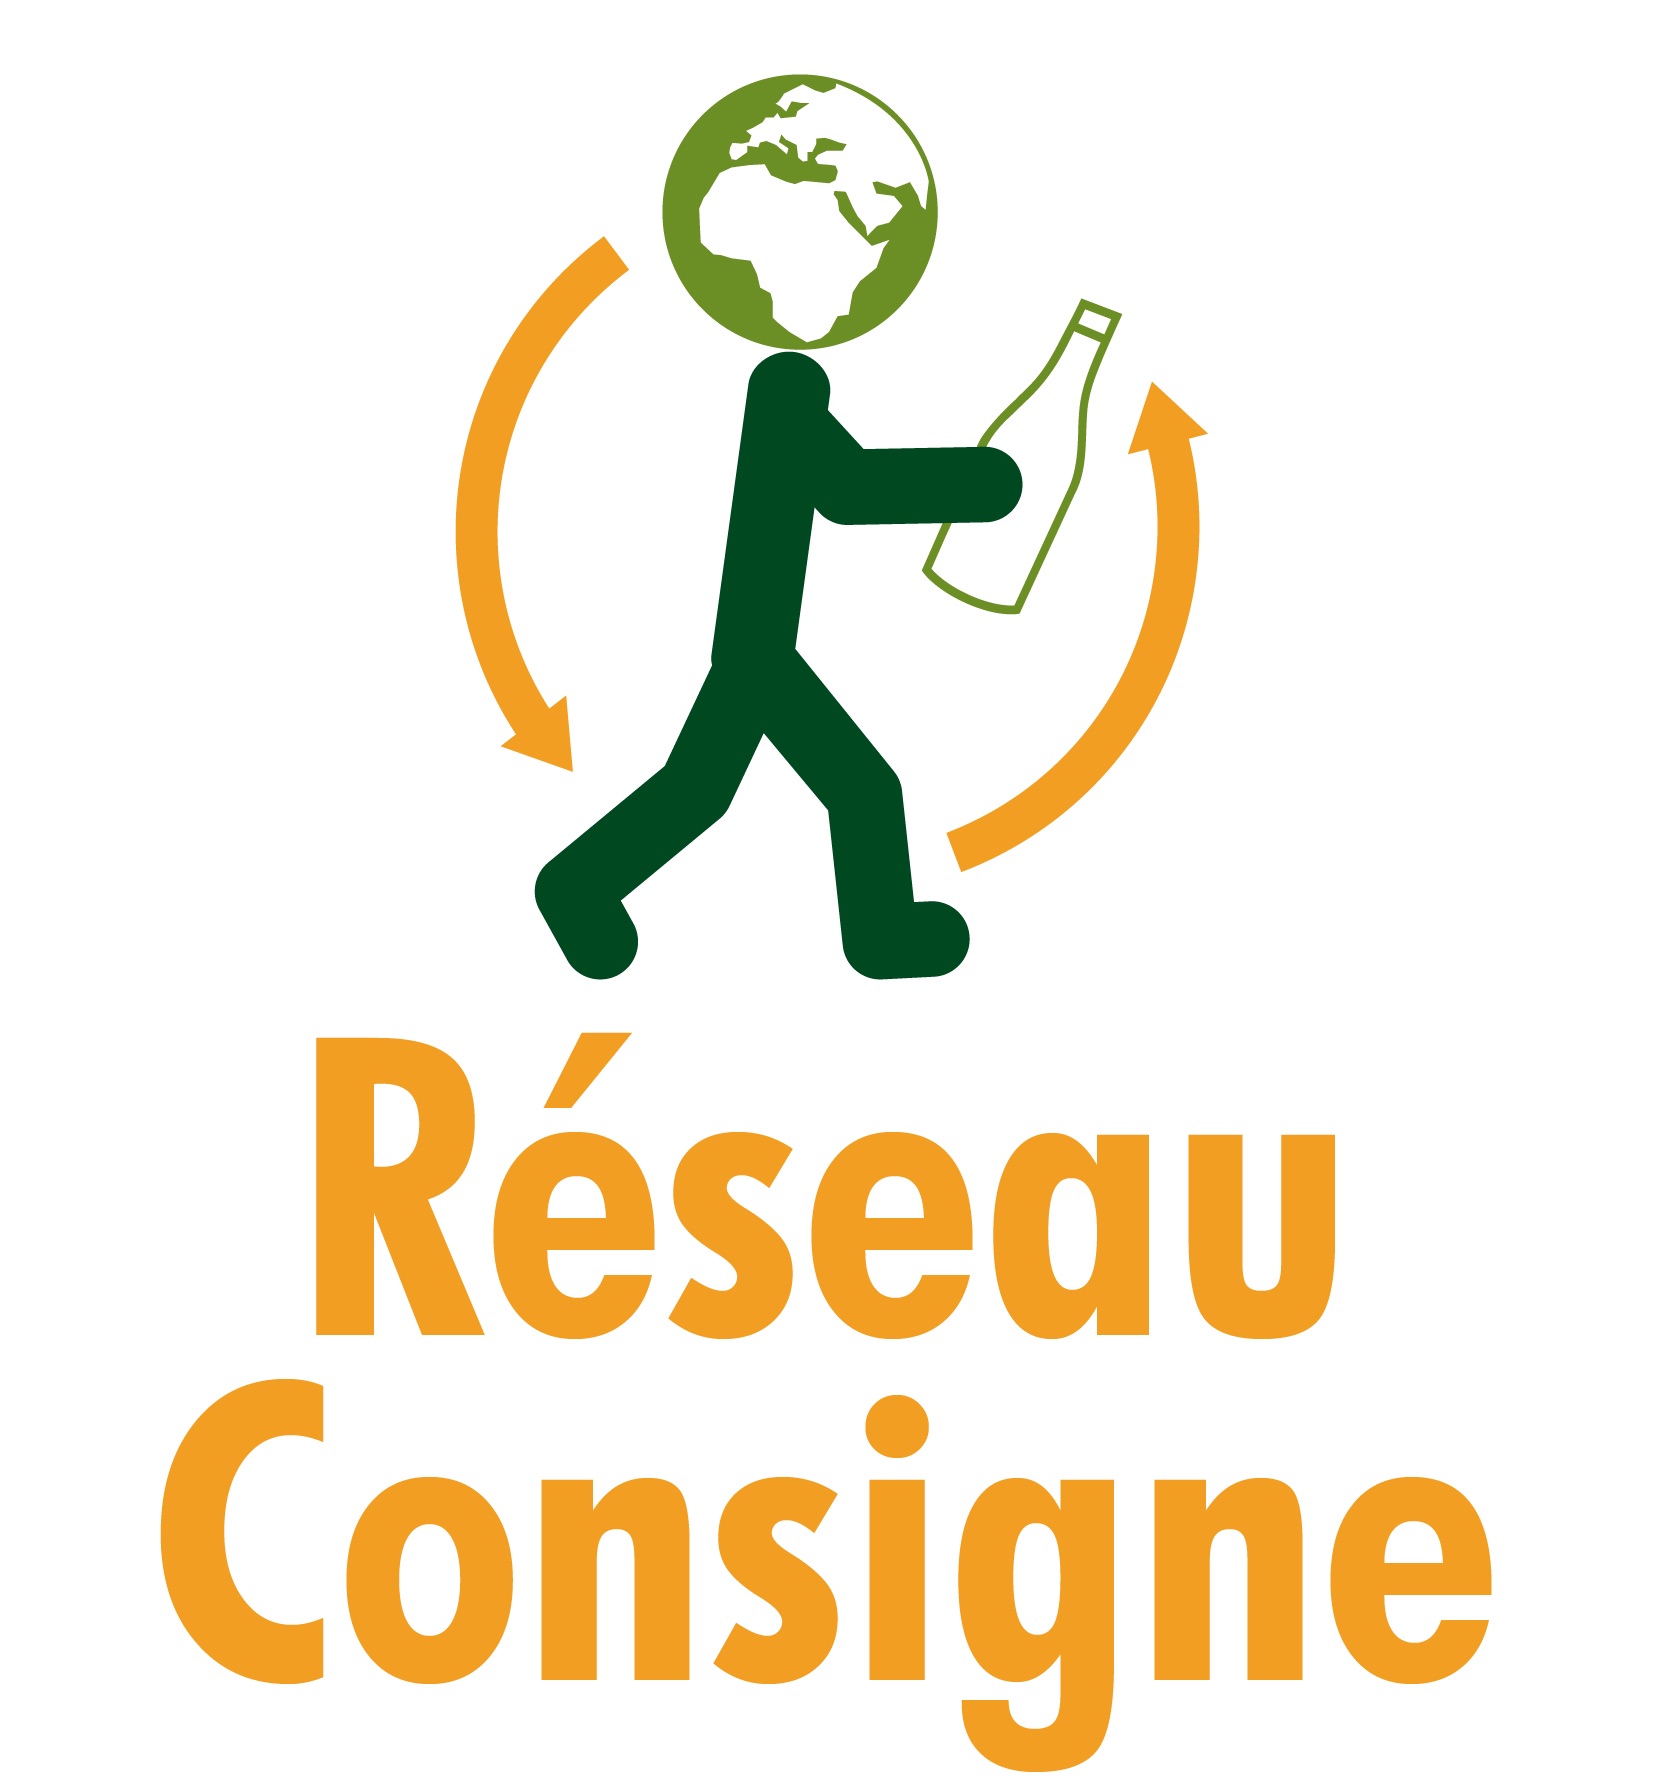 membre-reseauconsigne_logo